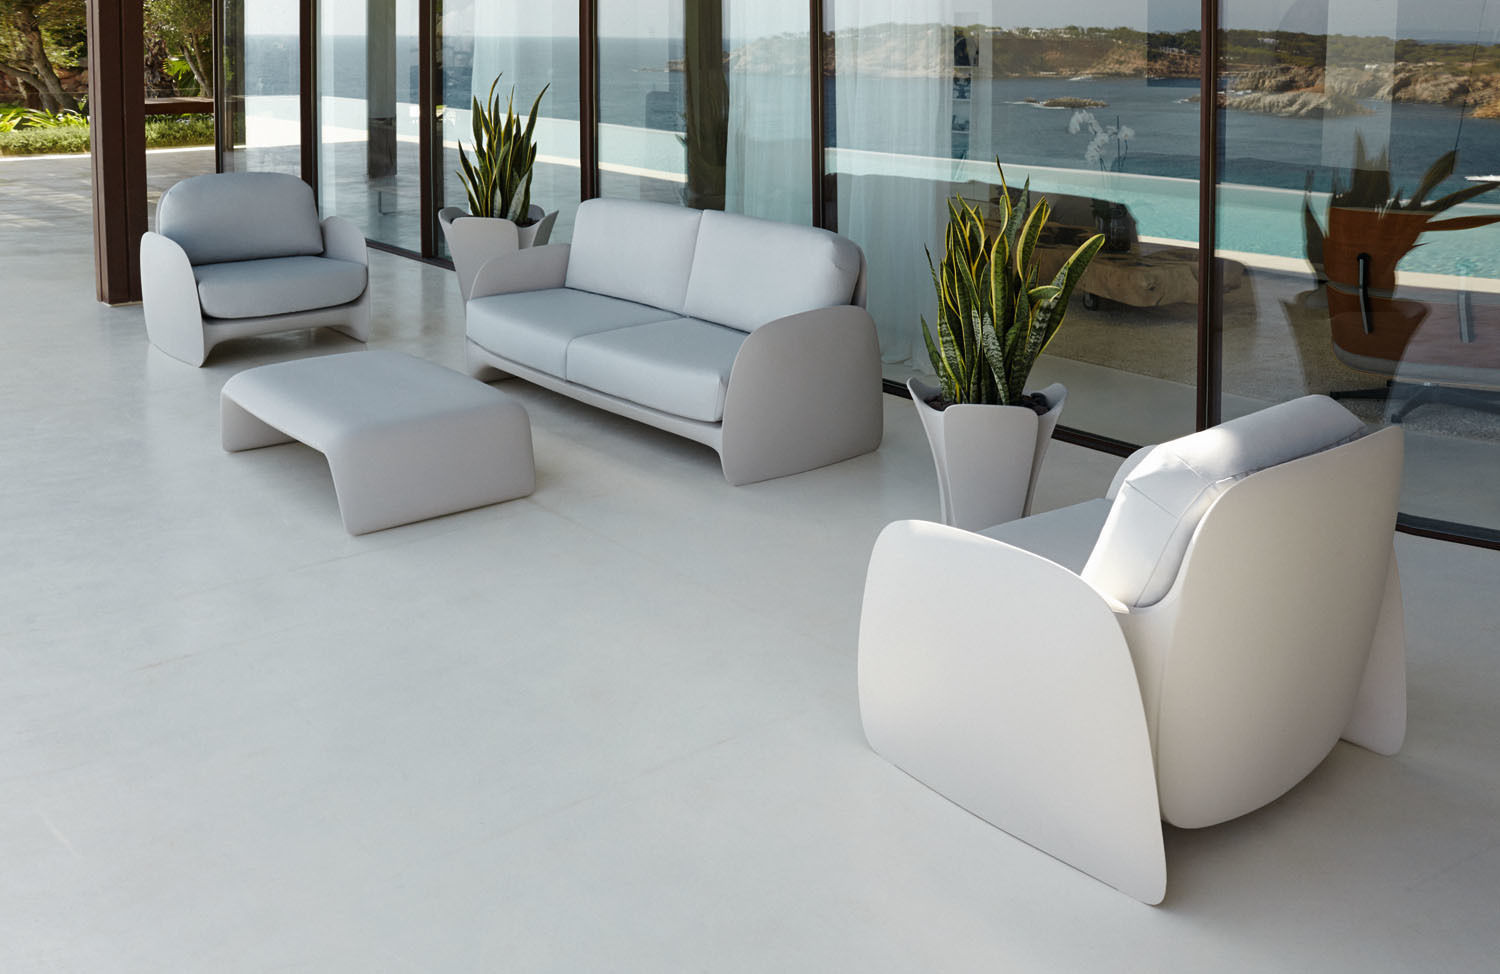 Muebles de jardín para la temporada 2015, Ociohogar Ociohogar Giardino moderno Mobili